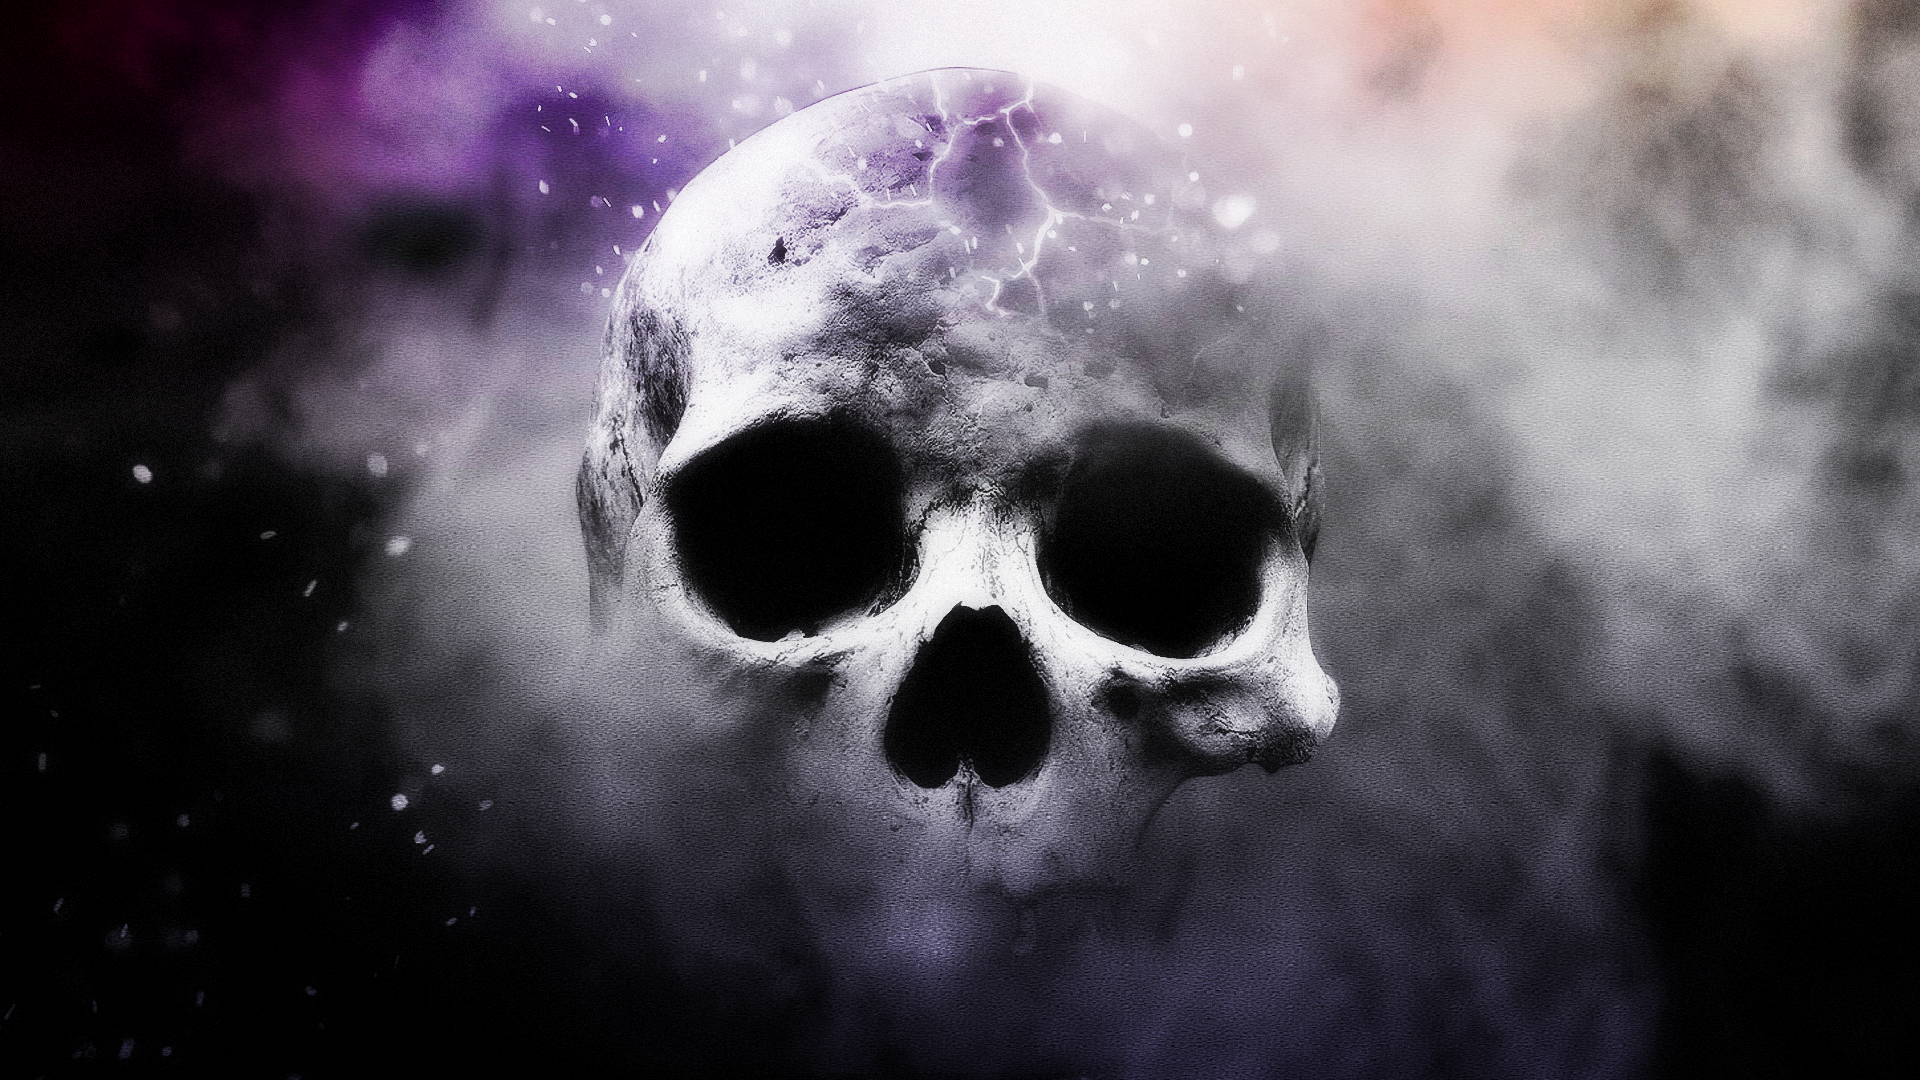 Mystic skull Fond d'écran HD | Image | 1920x1080 3d Skull Wallpaper Hd